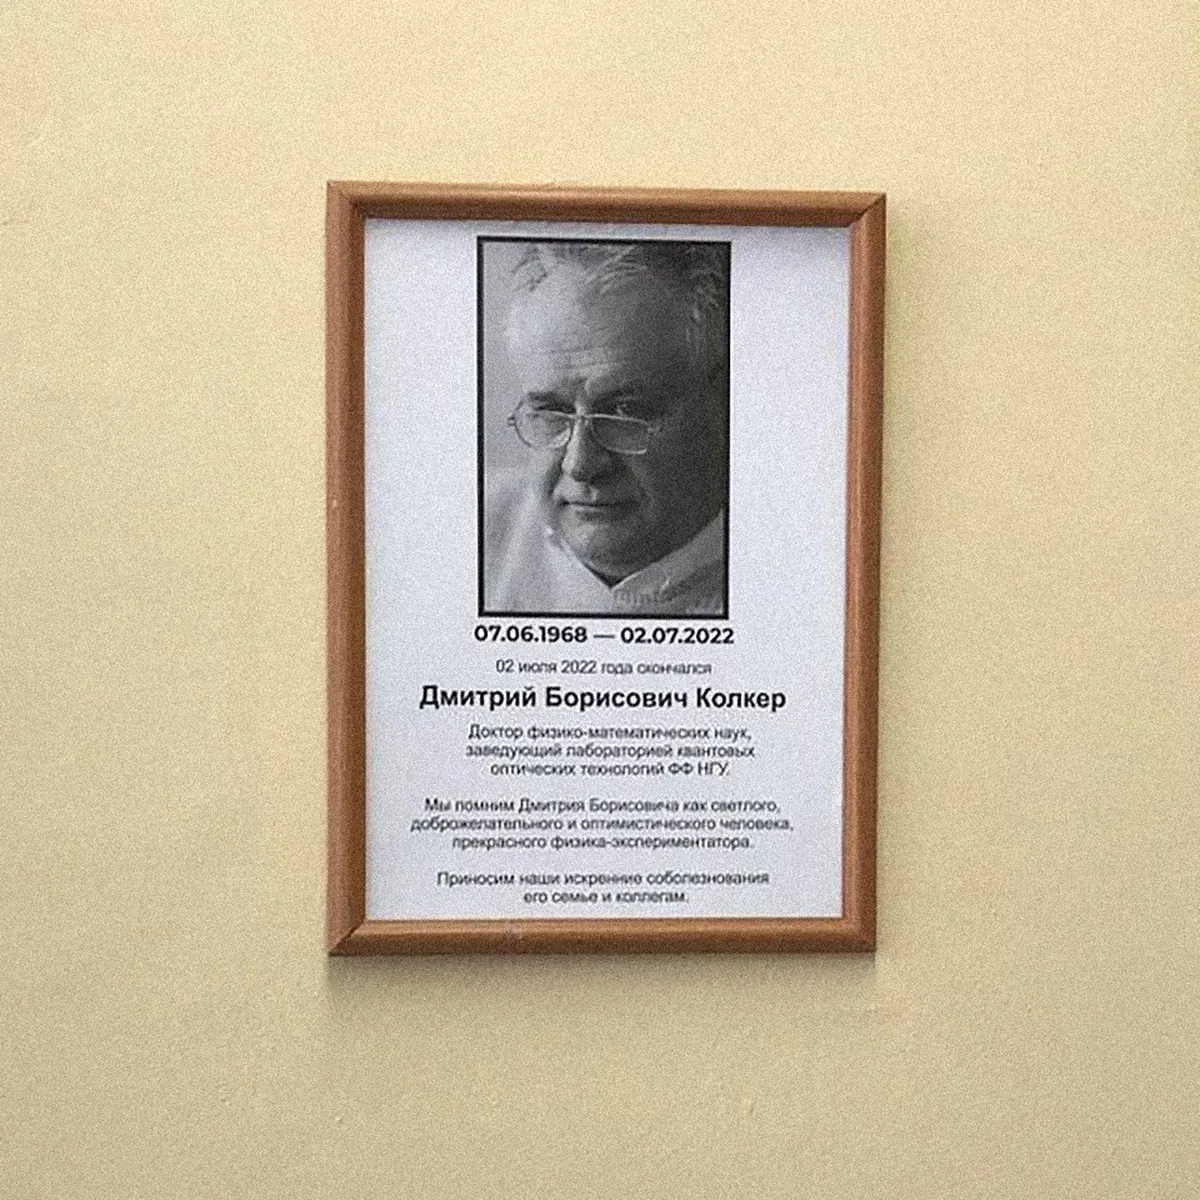 В университете повесили портрет Дмитрия Колкера с соболезнованиями, но ни словом не упомянули об обстоятельствах его смерти